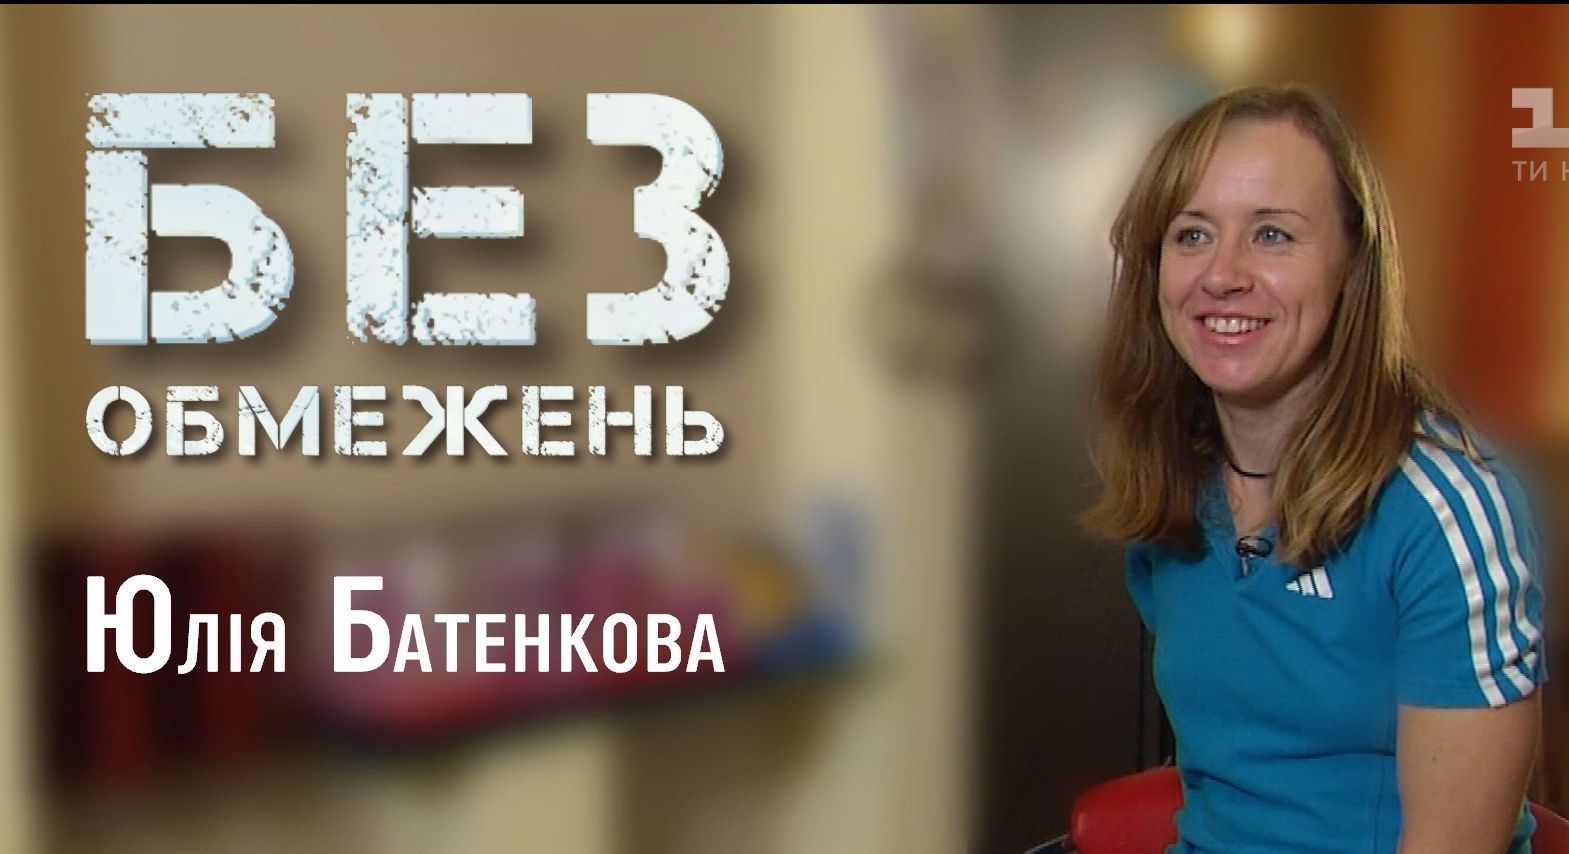 ТСН расскажет историю лыжницы-биатлонистки Юлии Батенковой